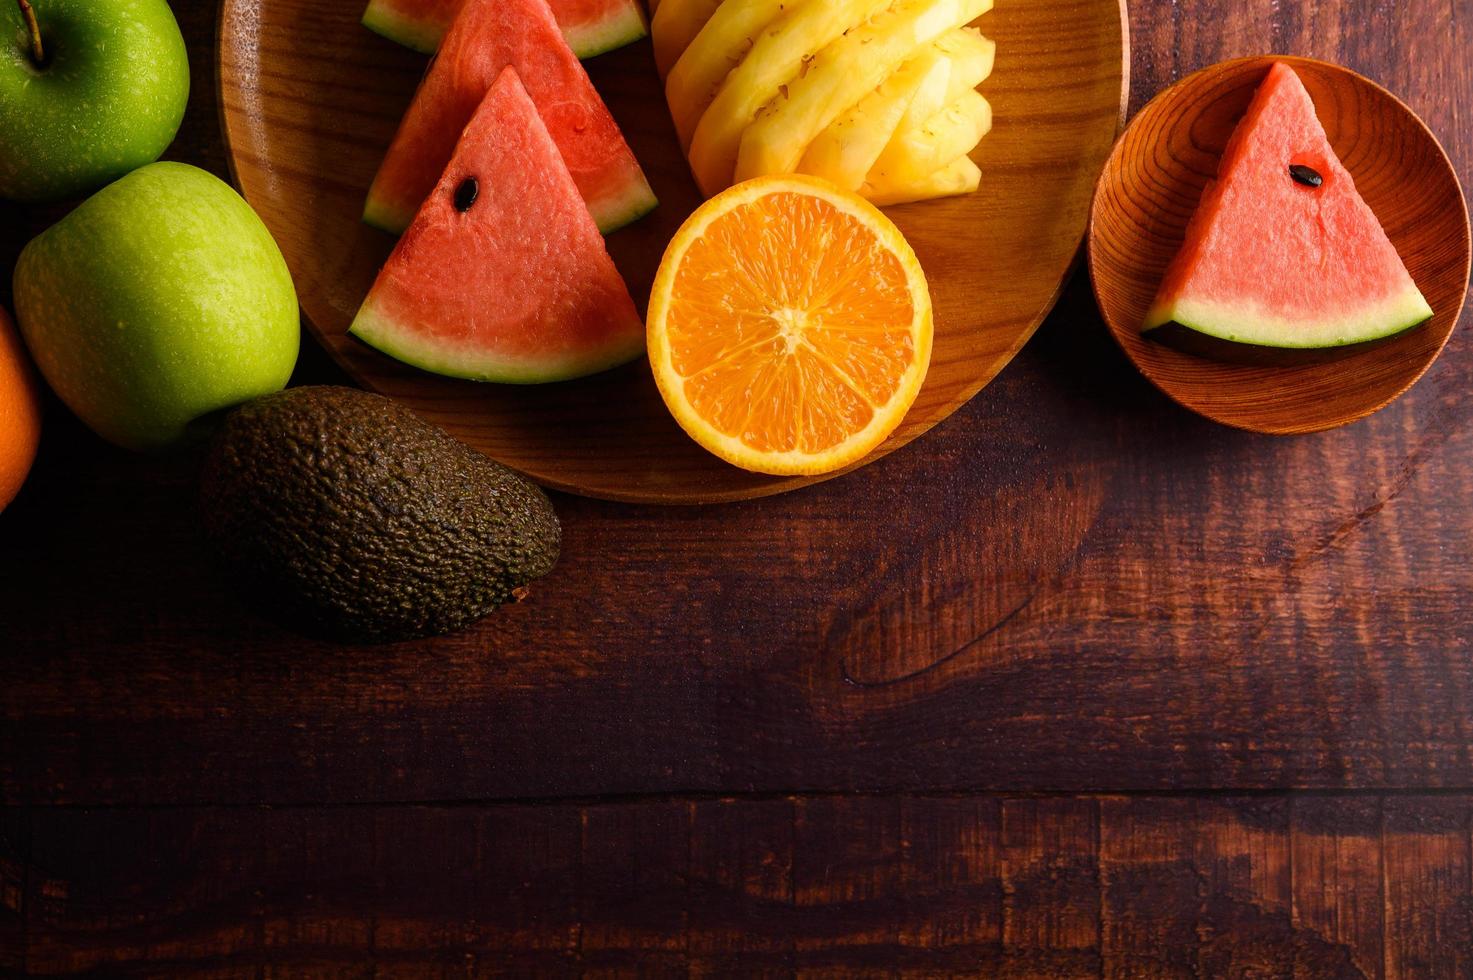 färgrik vattenmelon, ananas, apelsiner med avokado och äpplen foto